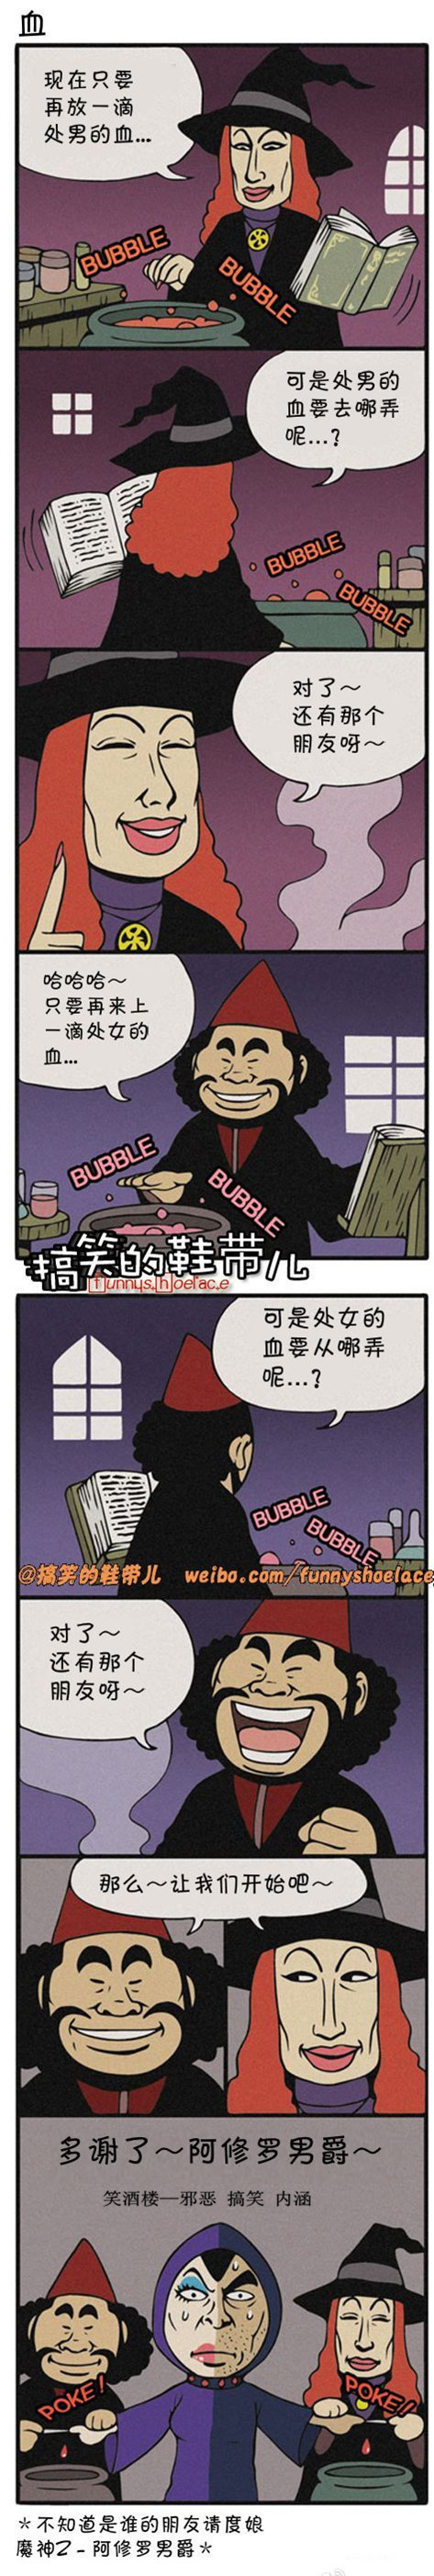 污漫画|4分钟料理系列漫画之血